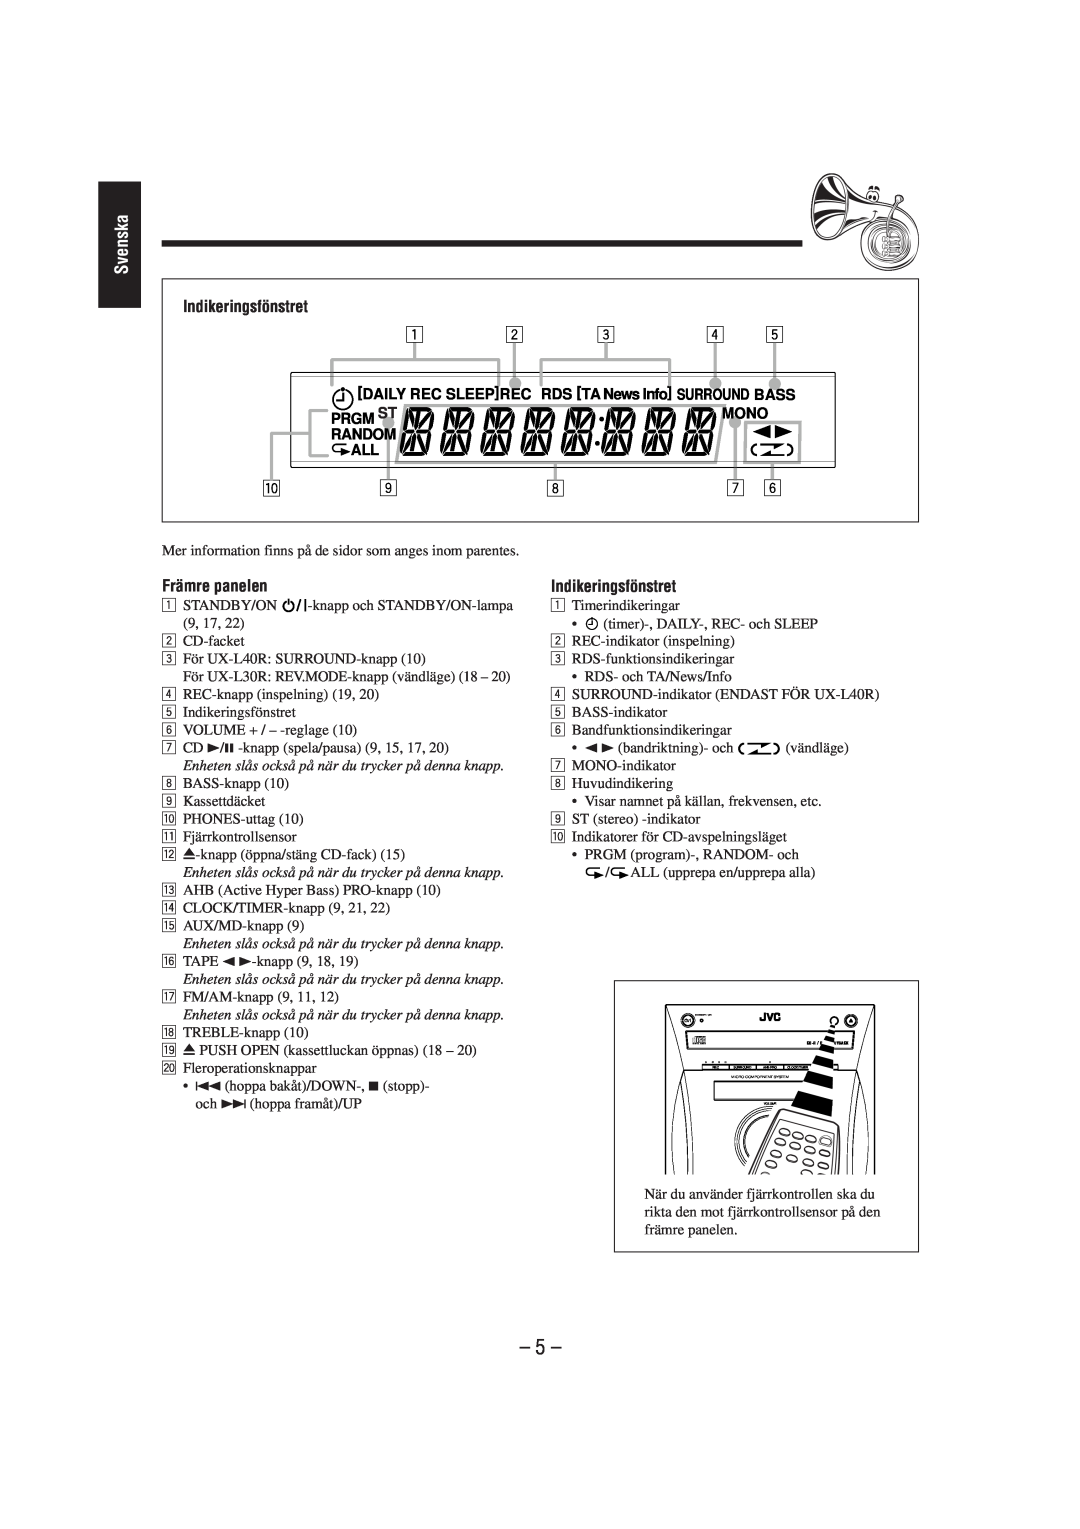 JVC CA-UXL40R, UX-L40R, UX-L30R, SP-UXL30, SP-UXL40, CA-UXL30R manual 5, Indikeringsfönstret, Främre panelen, Svenska 